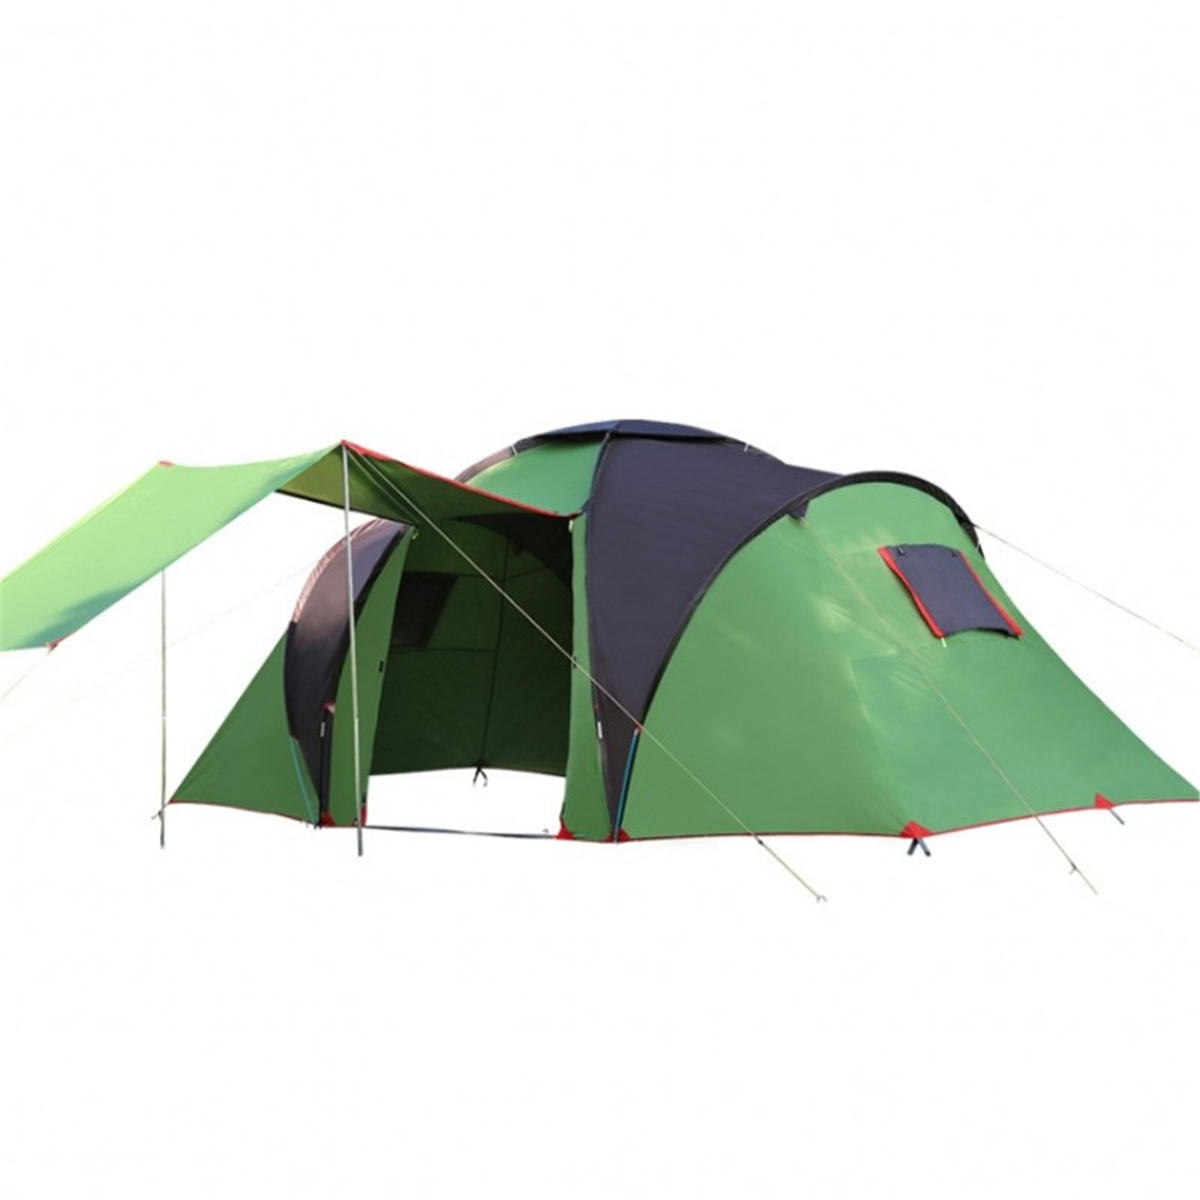 4-6 personnes famille Dome tente imperméable double couche grande canopée parasol camping extérieur